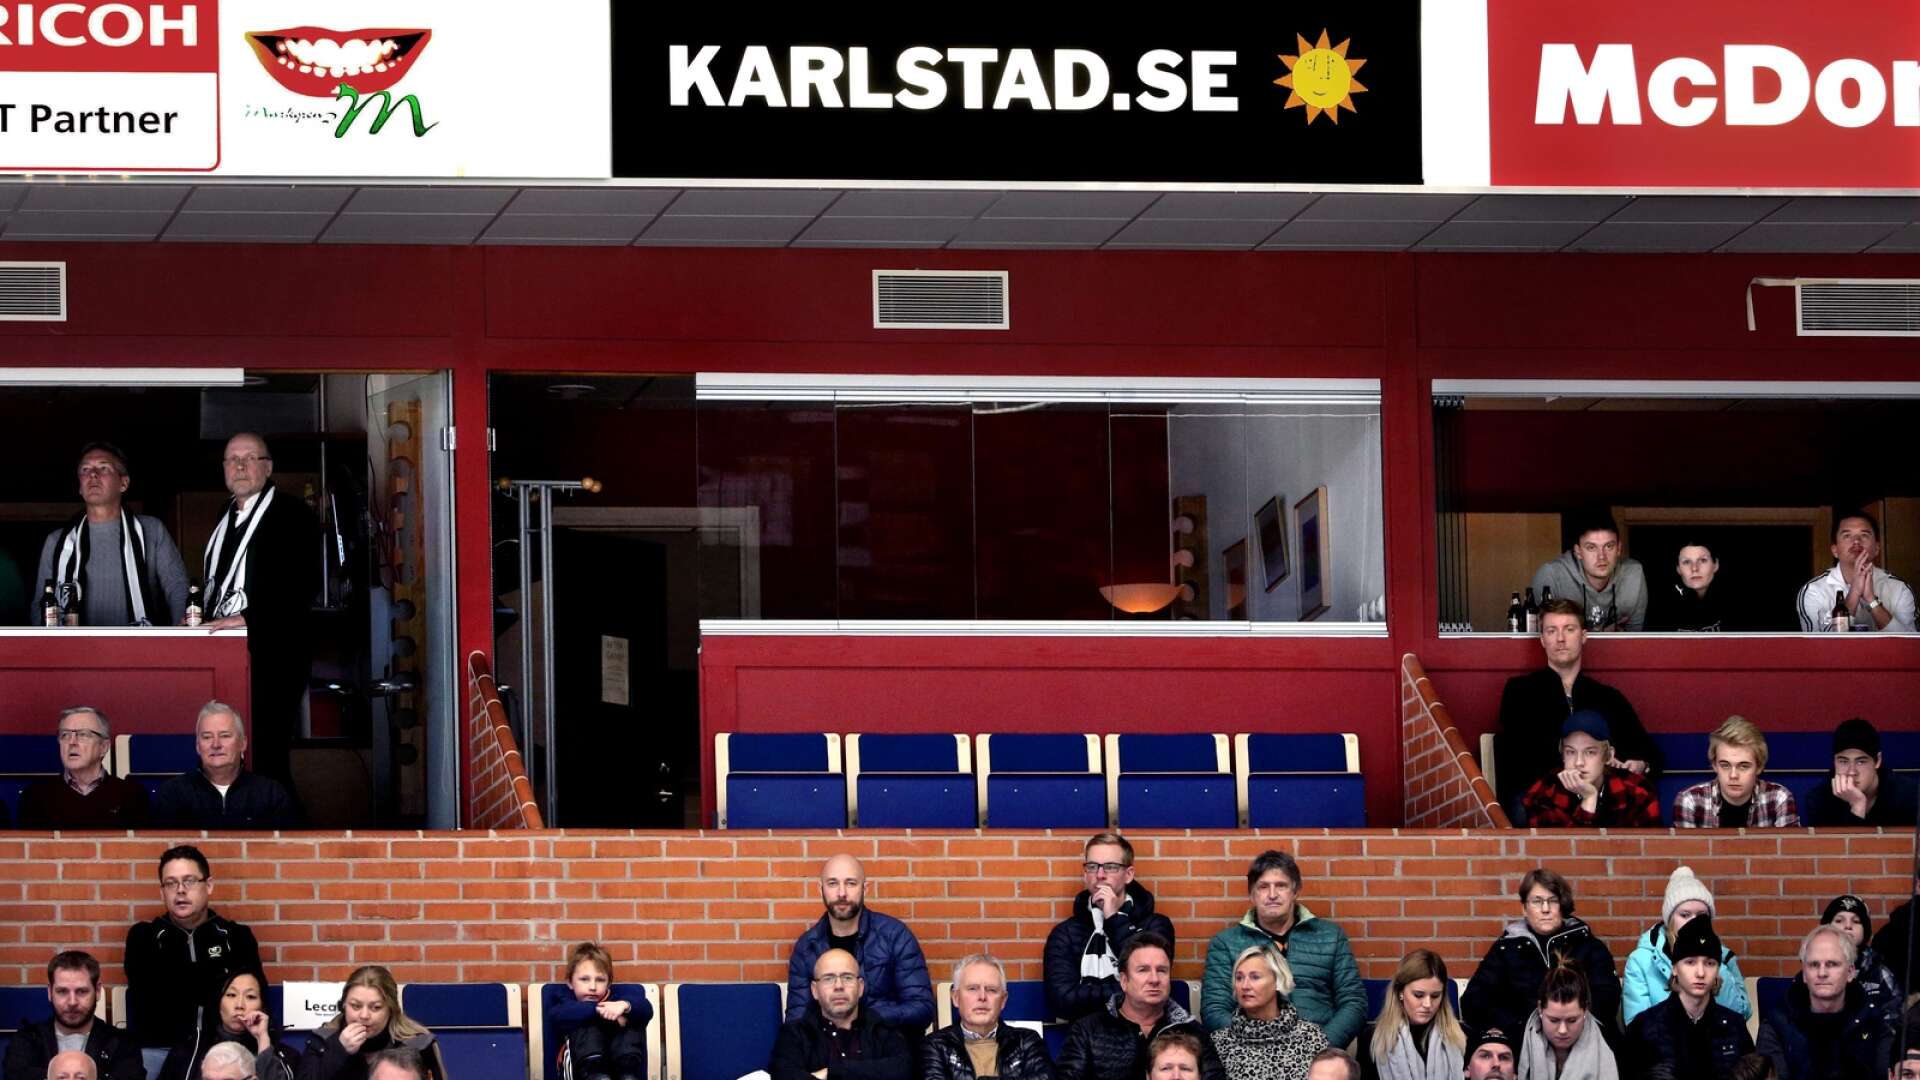 Viktigt att notera med avtalet, är att det inte är ett stöd till FBK:s hockeylag. I mångt och mycket handlar avtalet om att stötta ungdomsverksamheten, föreningar, skolor och allmänhetens åkning, skriver Karlstads grönröda styre i ett insändarsvar. På bilden syns Karlstads kommuns loge i Löfbergs arena.